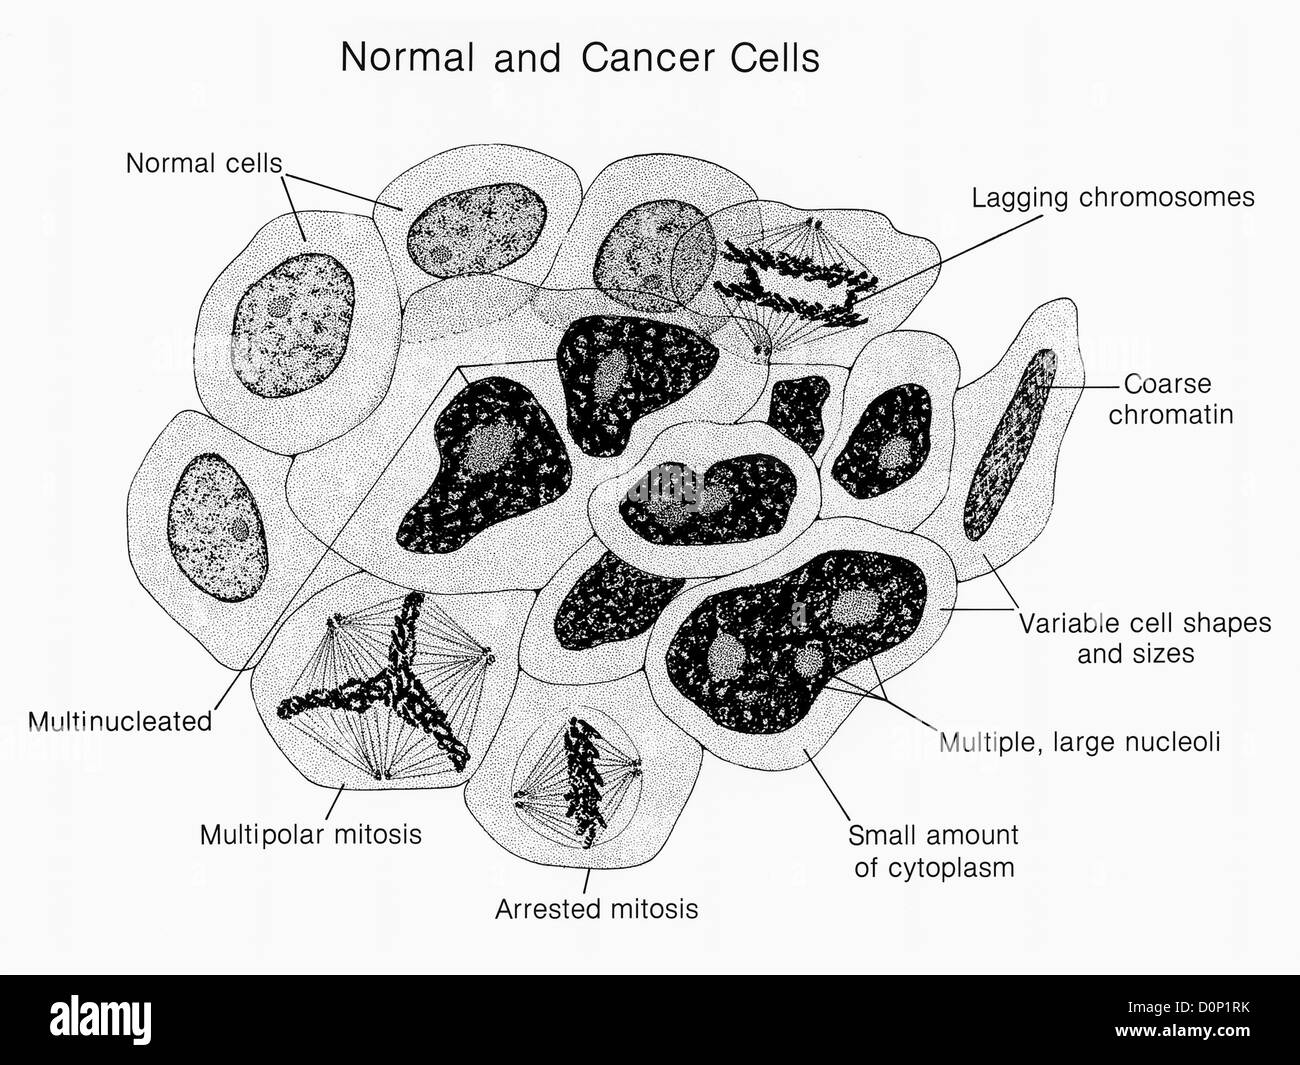 Des Künstlers Krebszellen Wiedergabe normalen Side-by-Side. normale krebsige Eigenschaften sind gekennzeichnet. Abbildung Pat Kenny. Stockfoto